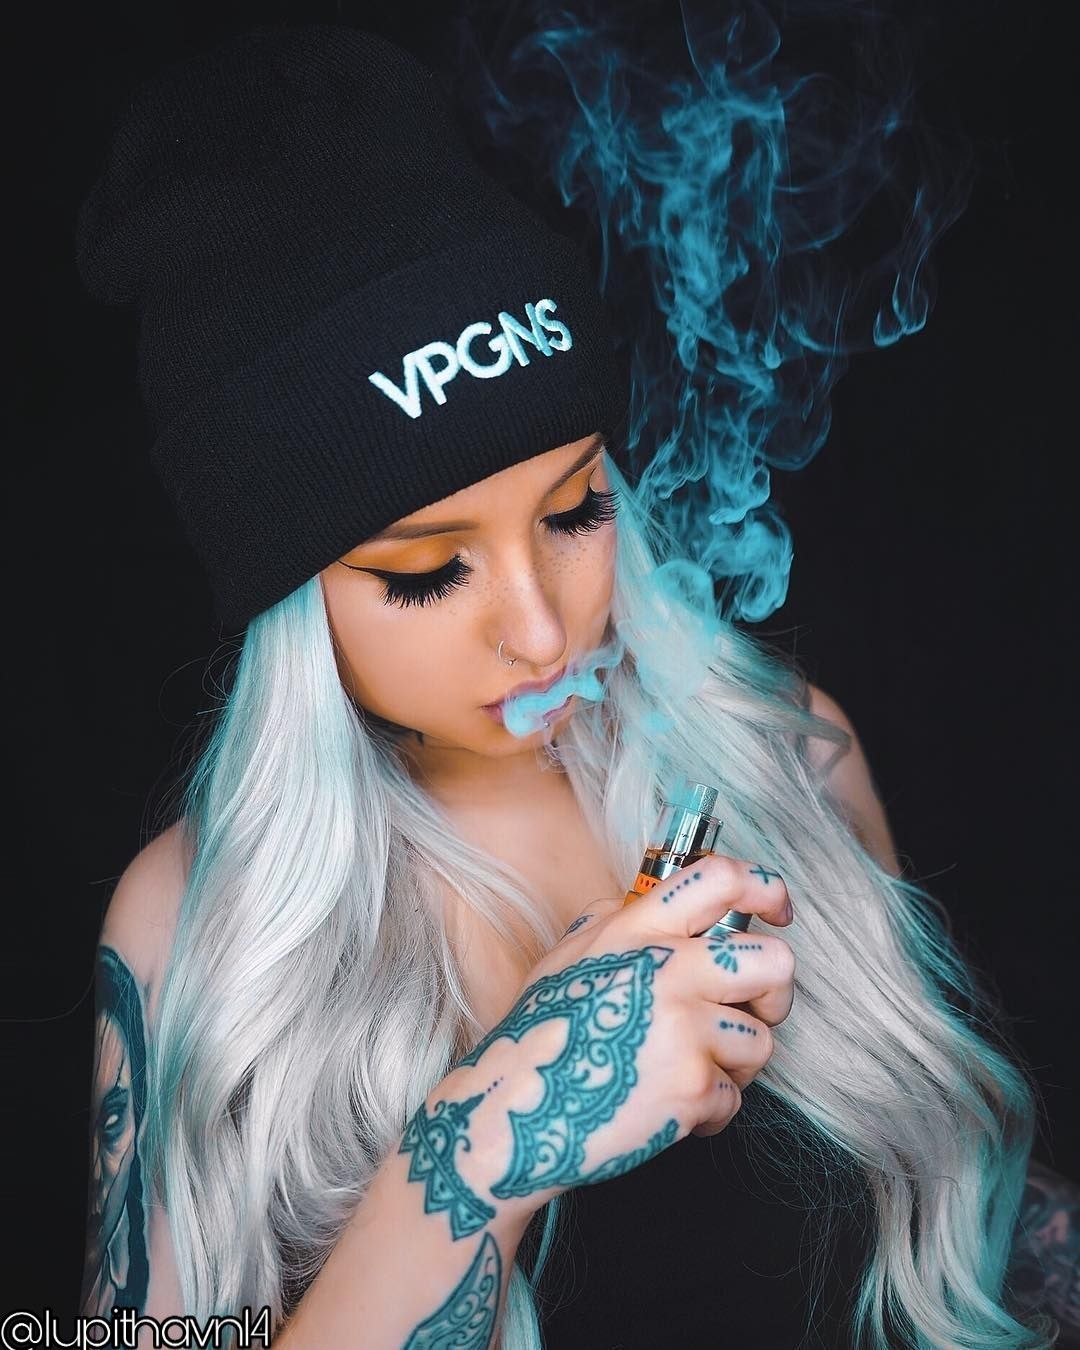 woman tattoos girl smoking smoke Image